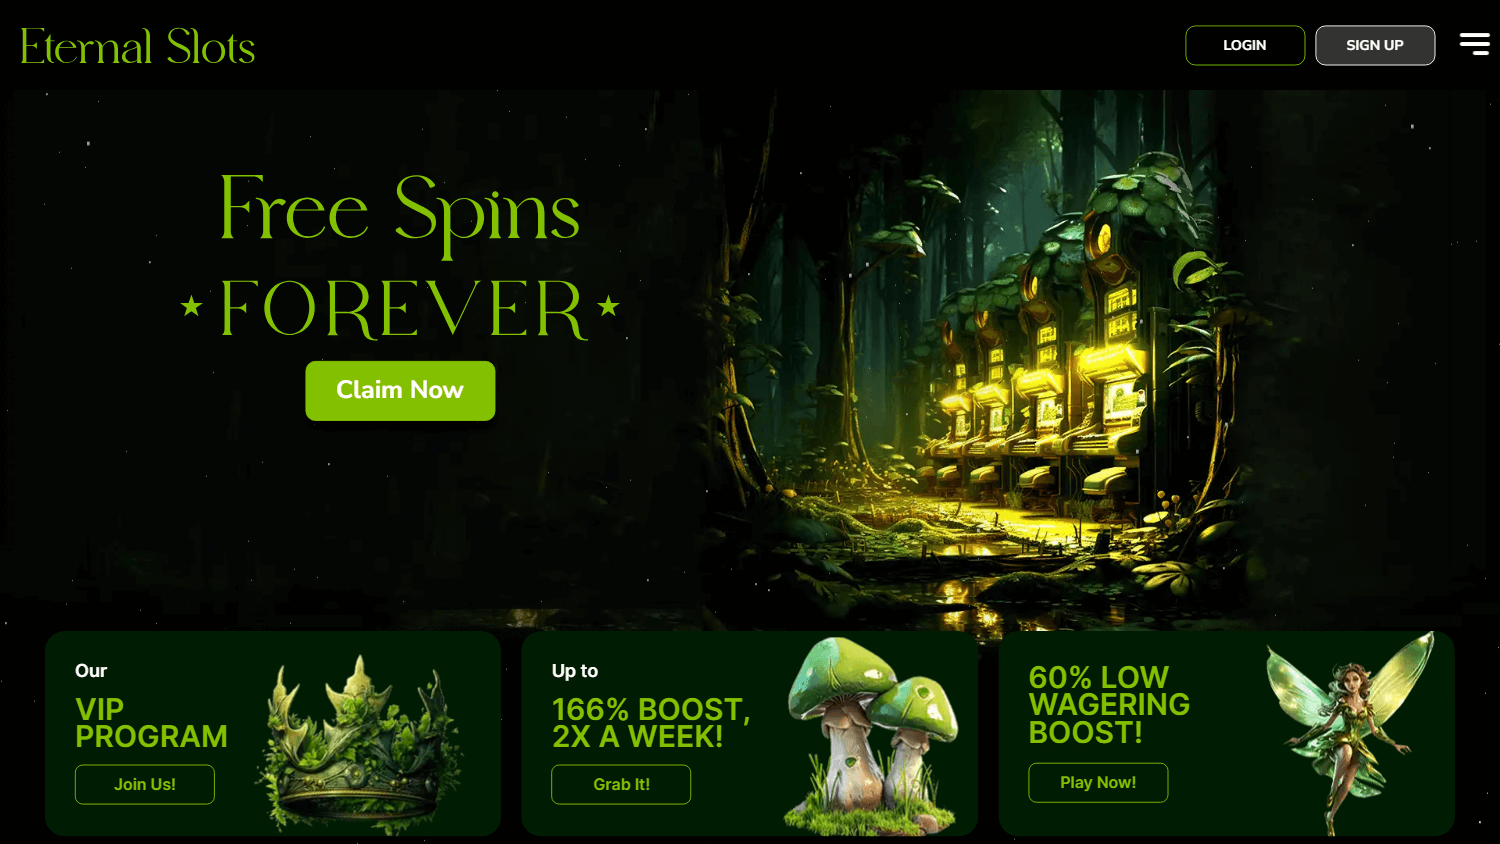 eternal_slots_casino_homepage_desktop